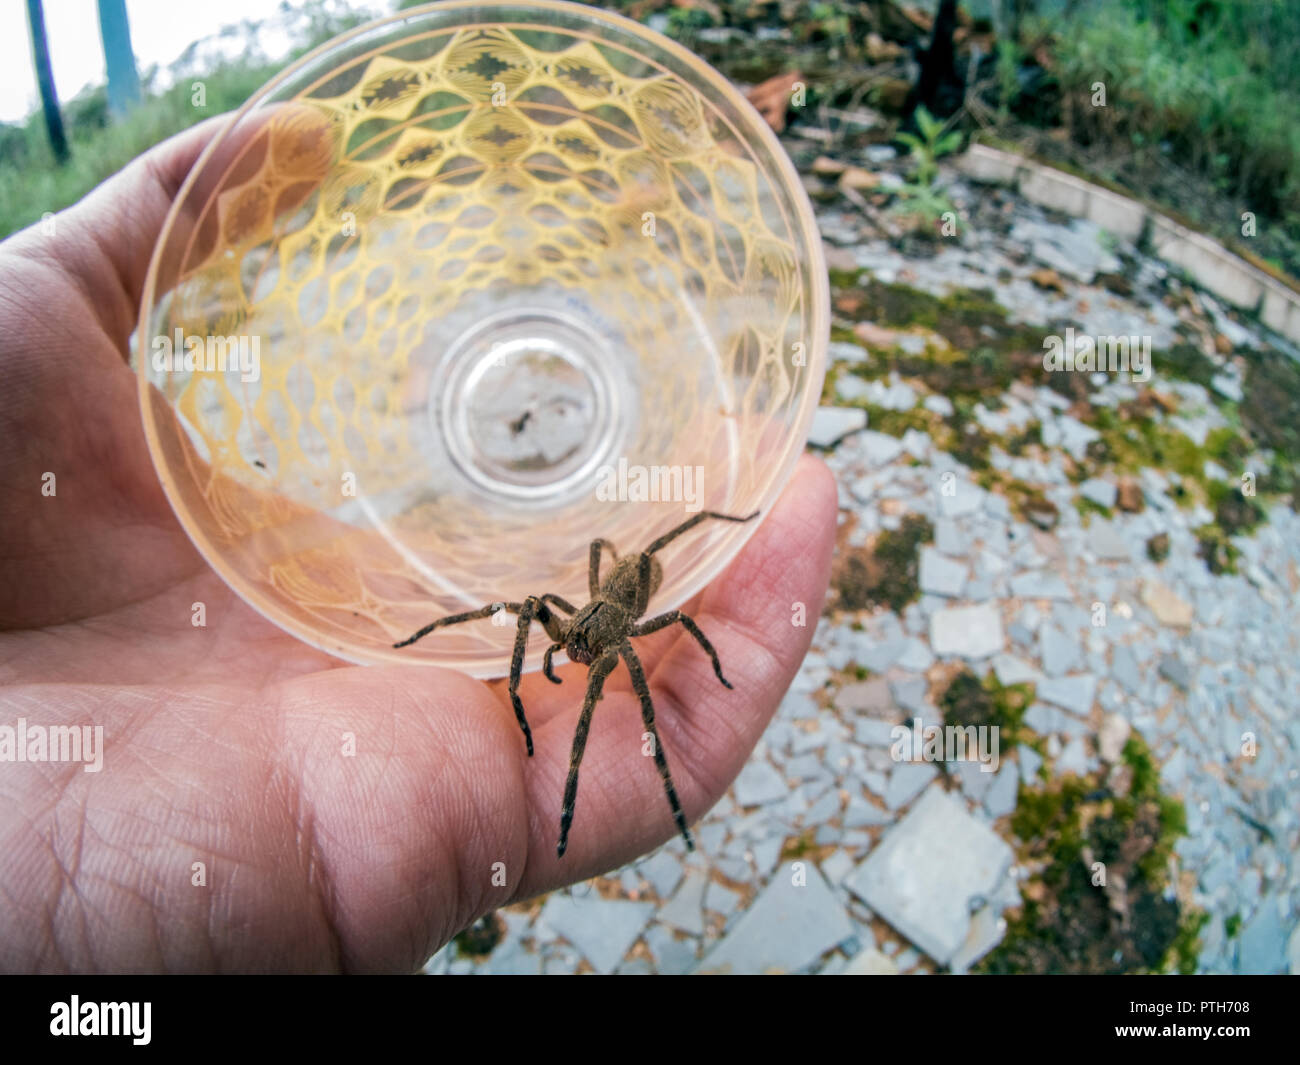 Phoneutria (brésilien) armadeira errance spider, enregistrées à l'intérieur d'une tasse en verre et marcher sur un côté, connu pour les décès chez les enfants et les personnes âgées. Banque D'Images